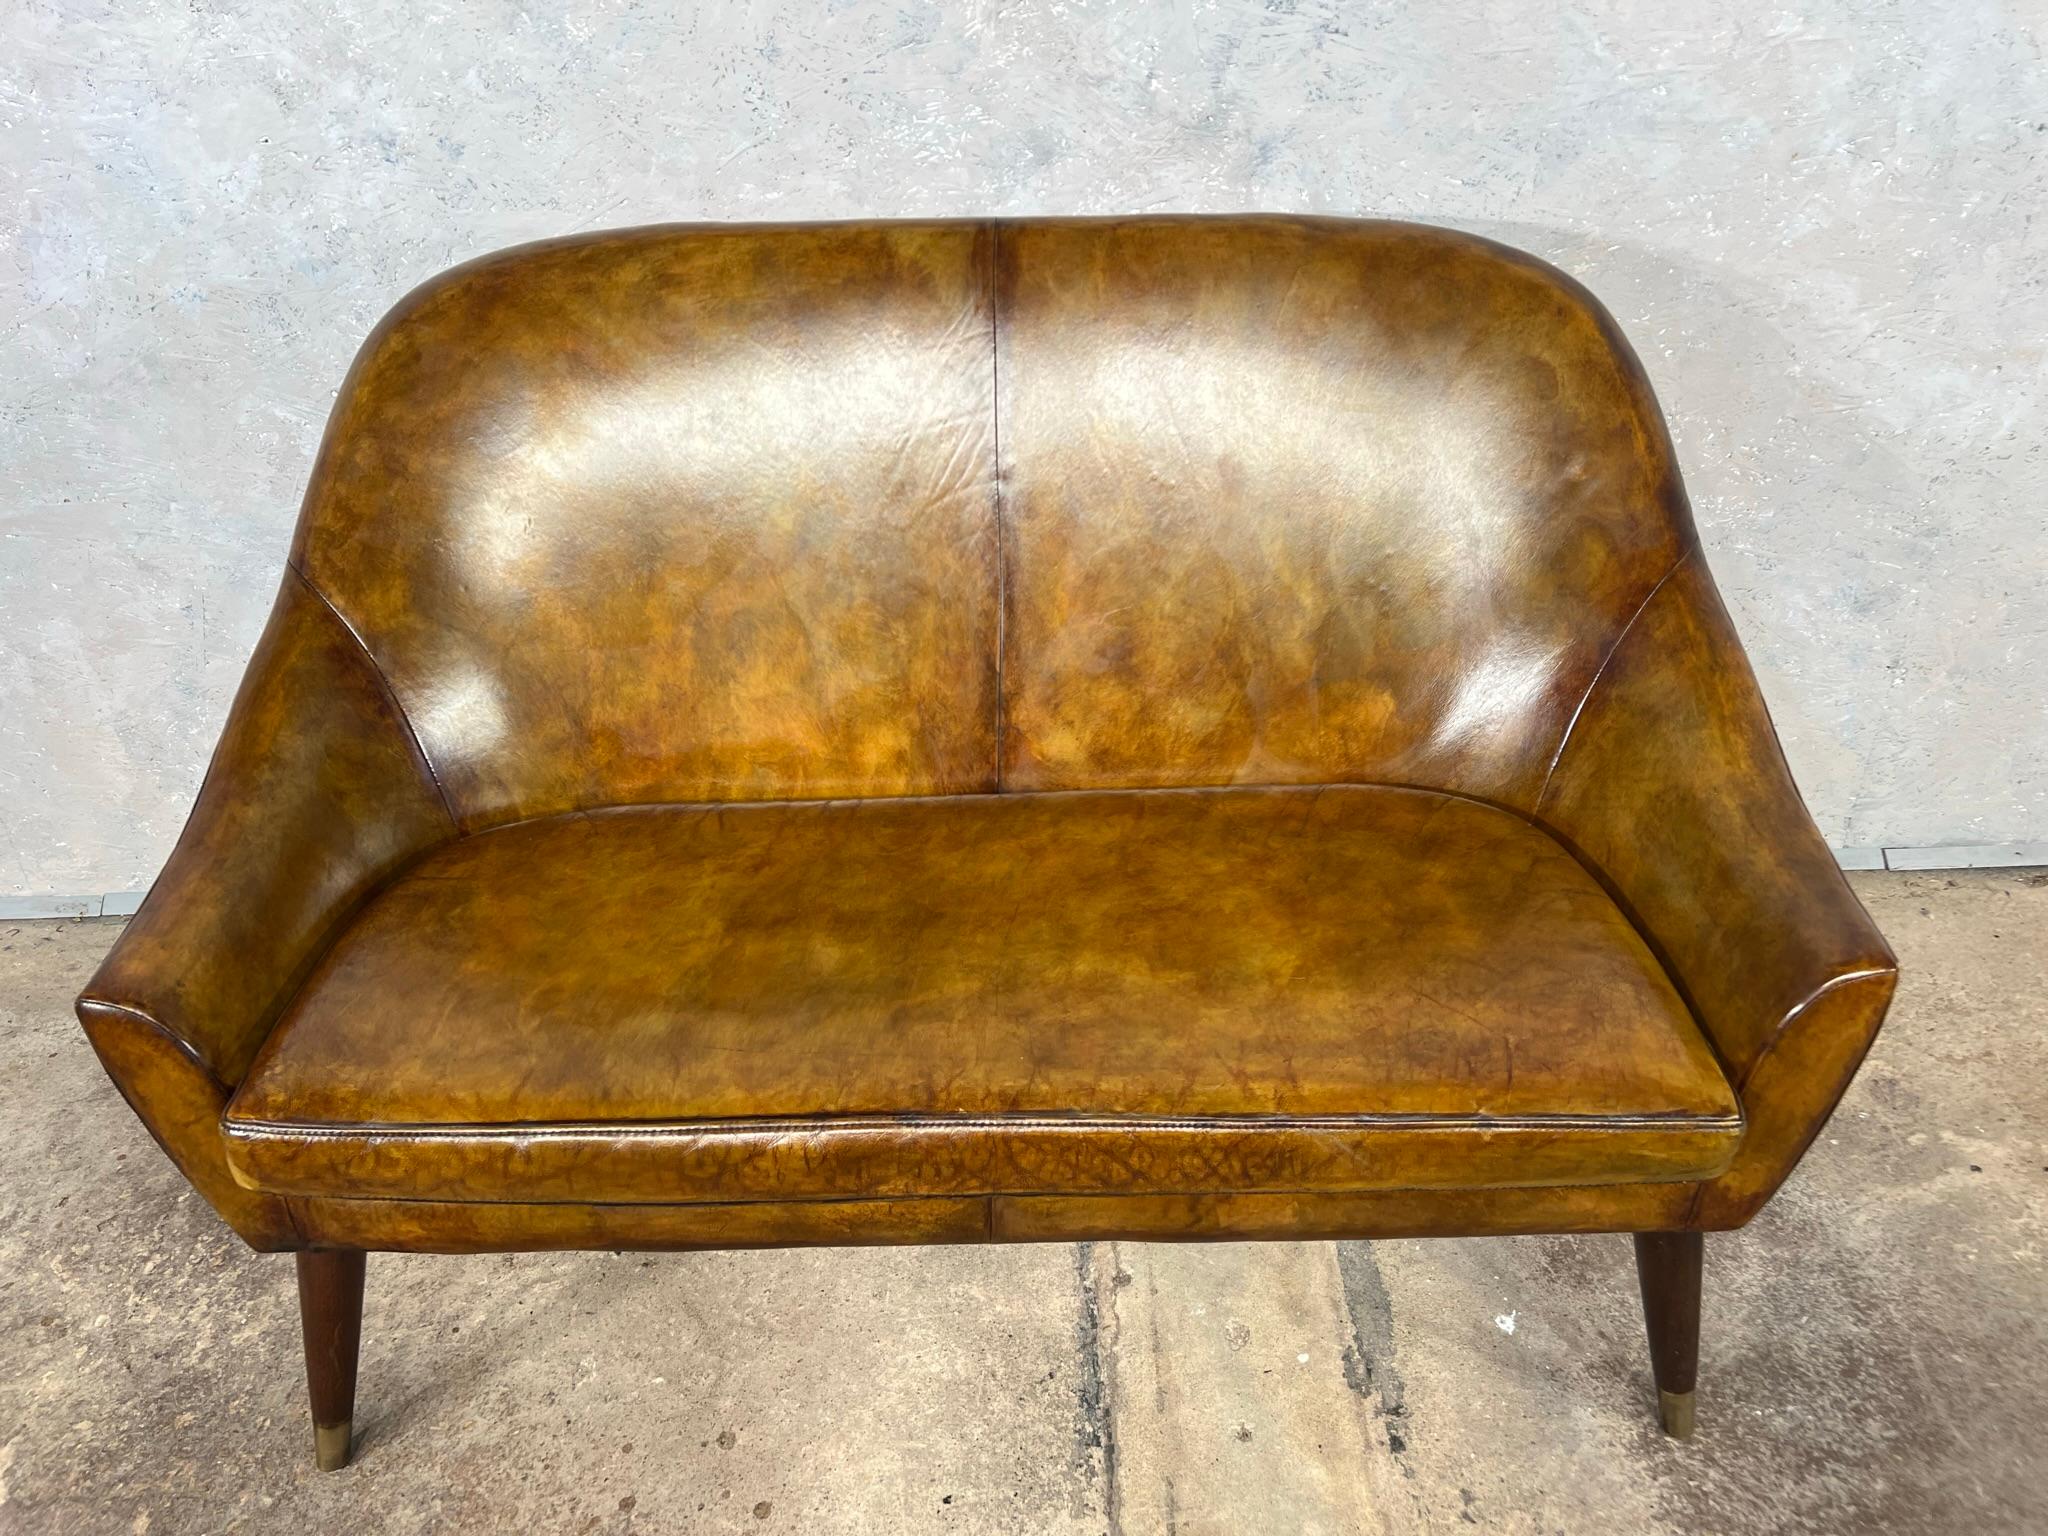 Ein sehr stilvolles Sofa im Vintage-Stil mit einer wunderschönen patinierten hellbraunen Farbe. Großartiges Design, das gut sitzt. Ordentlich in der Größe. Beine aus massivem Mahagoni mit Messingkappen .
Besichtigungen sind in unserem